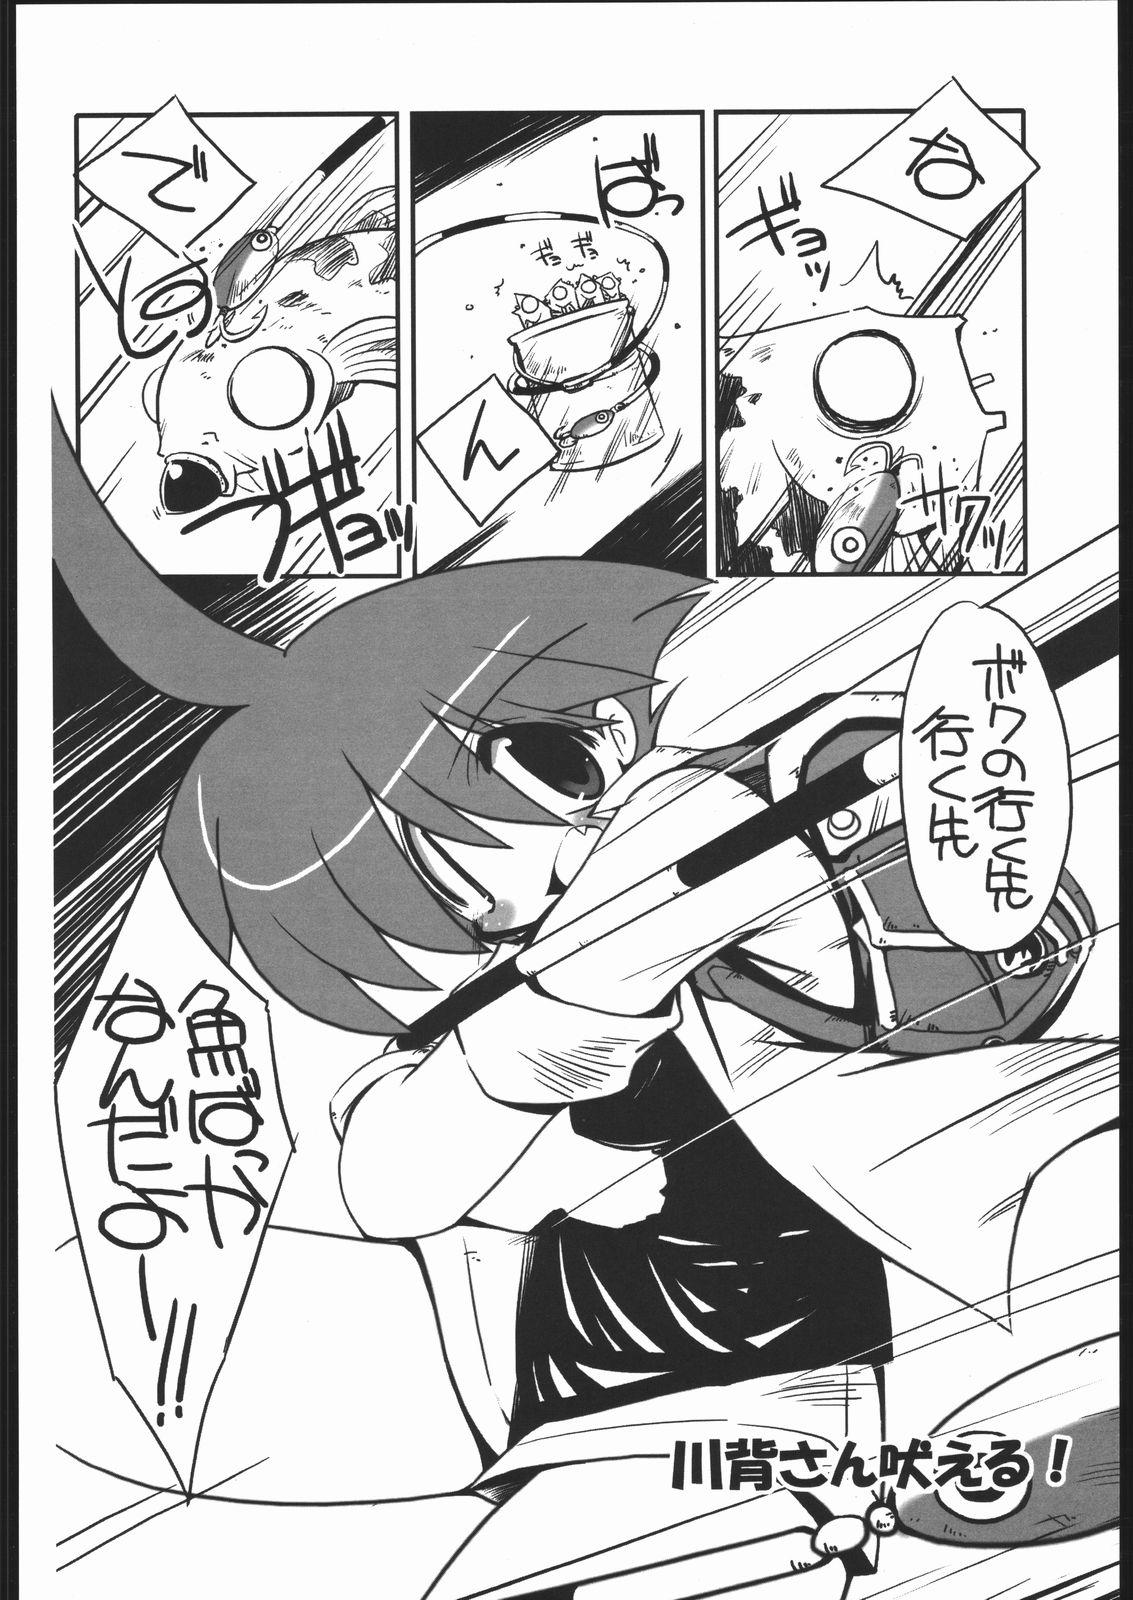 Nerd vsF48 - Umihara kawase Domination - Page 7